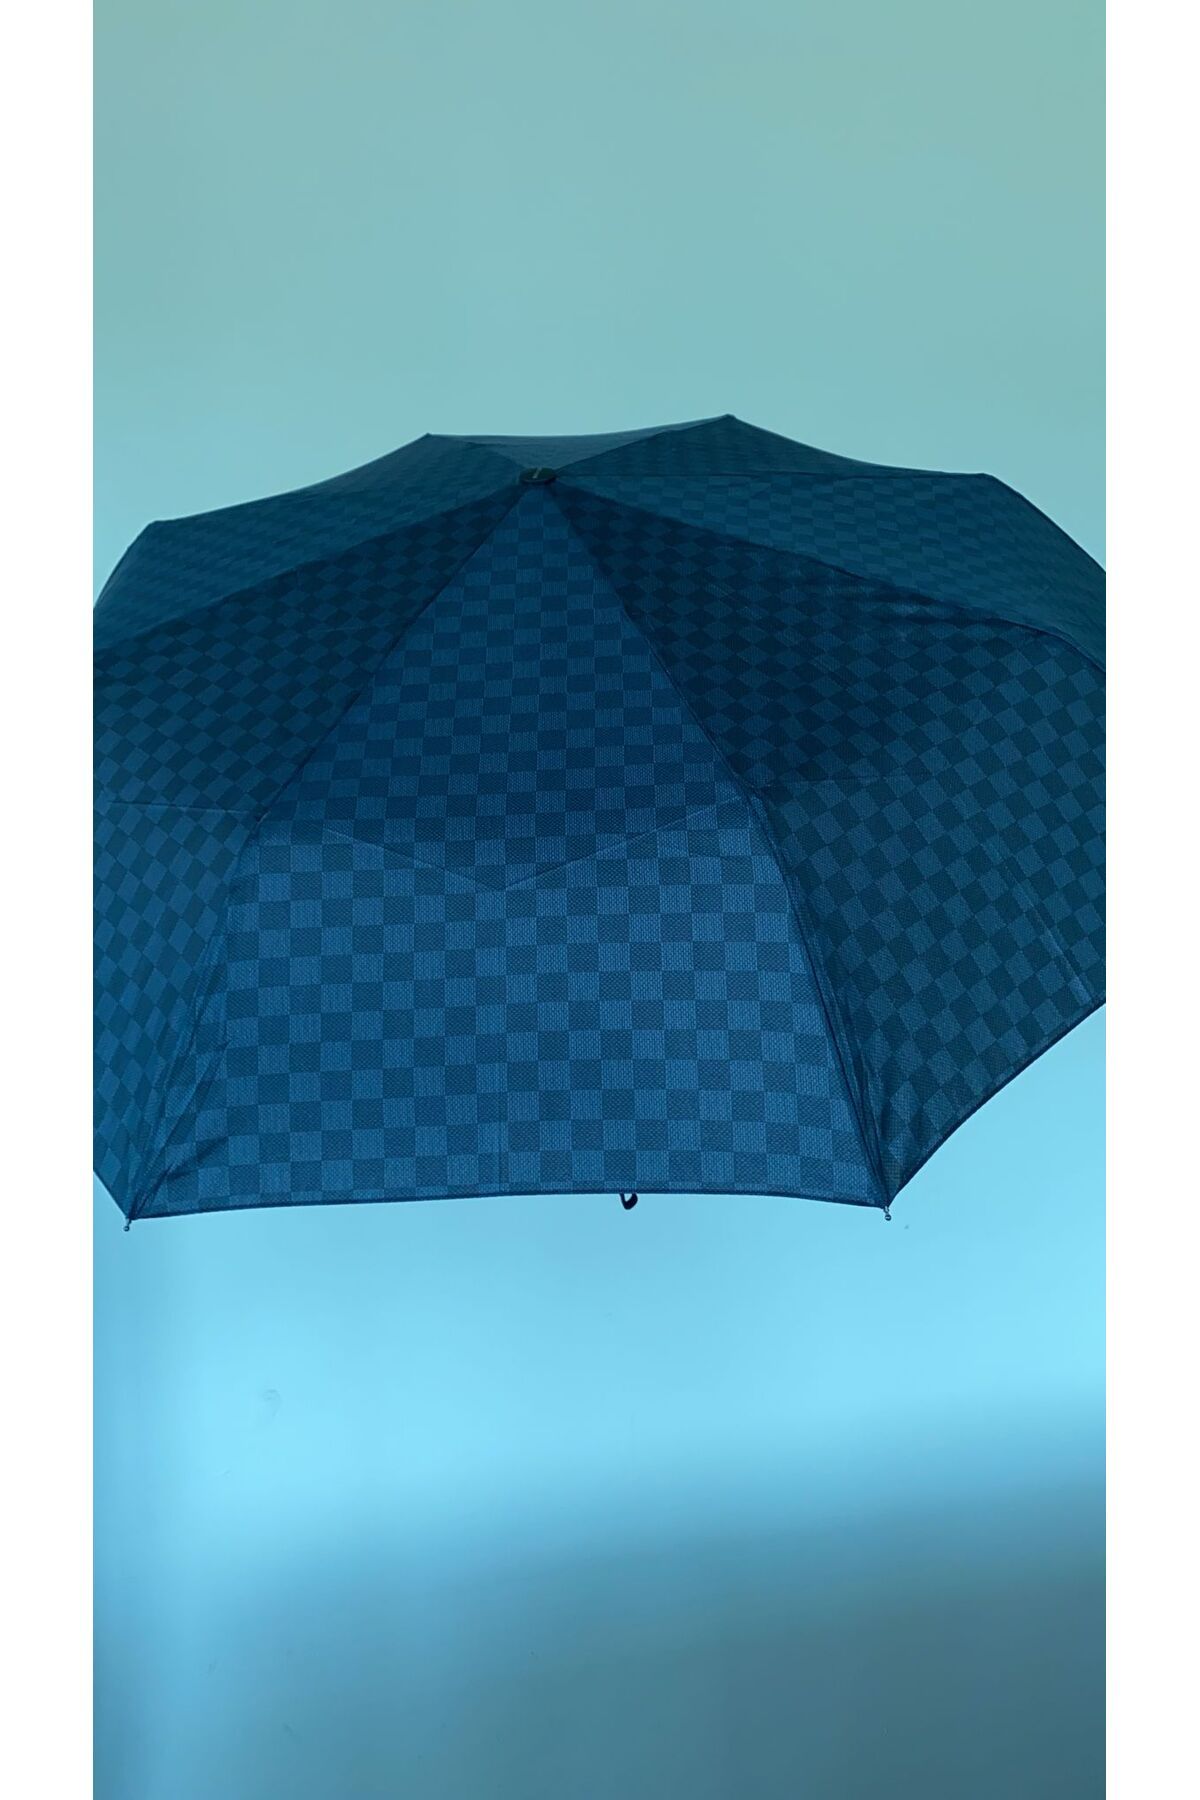 SosyalBen Tam Otomatik Şemsiye Lacivert